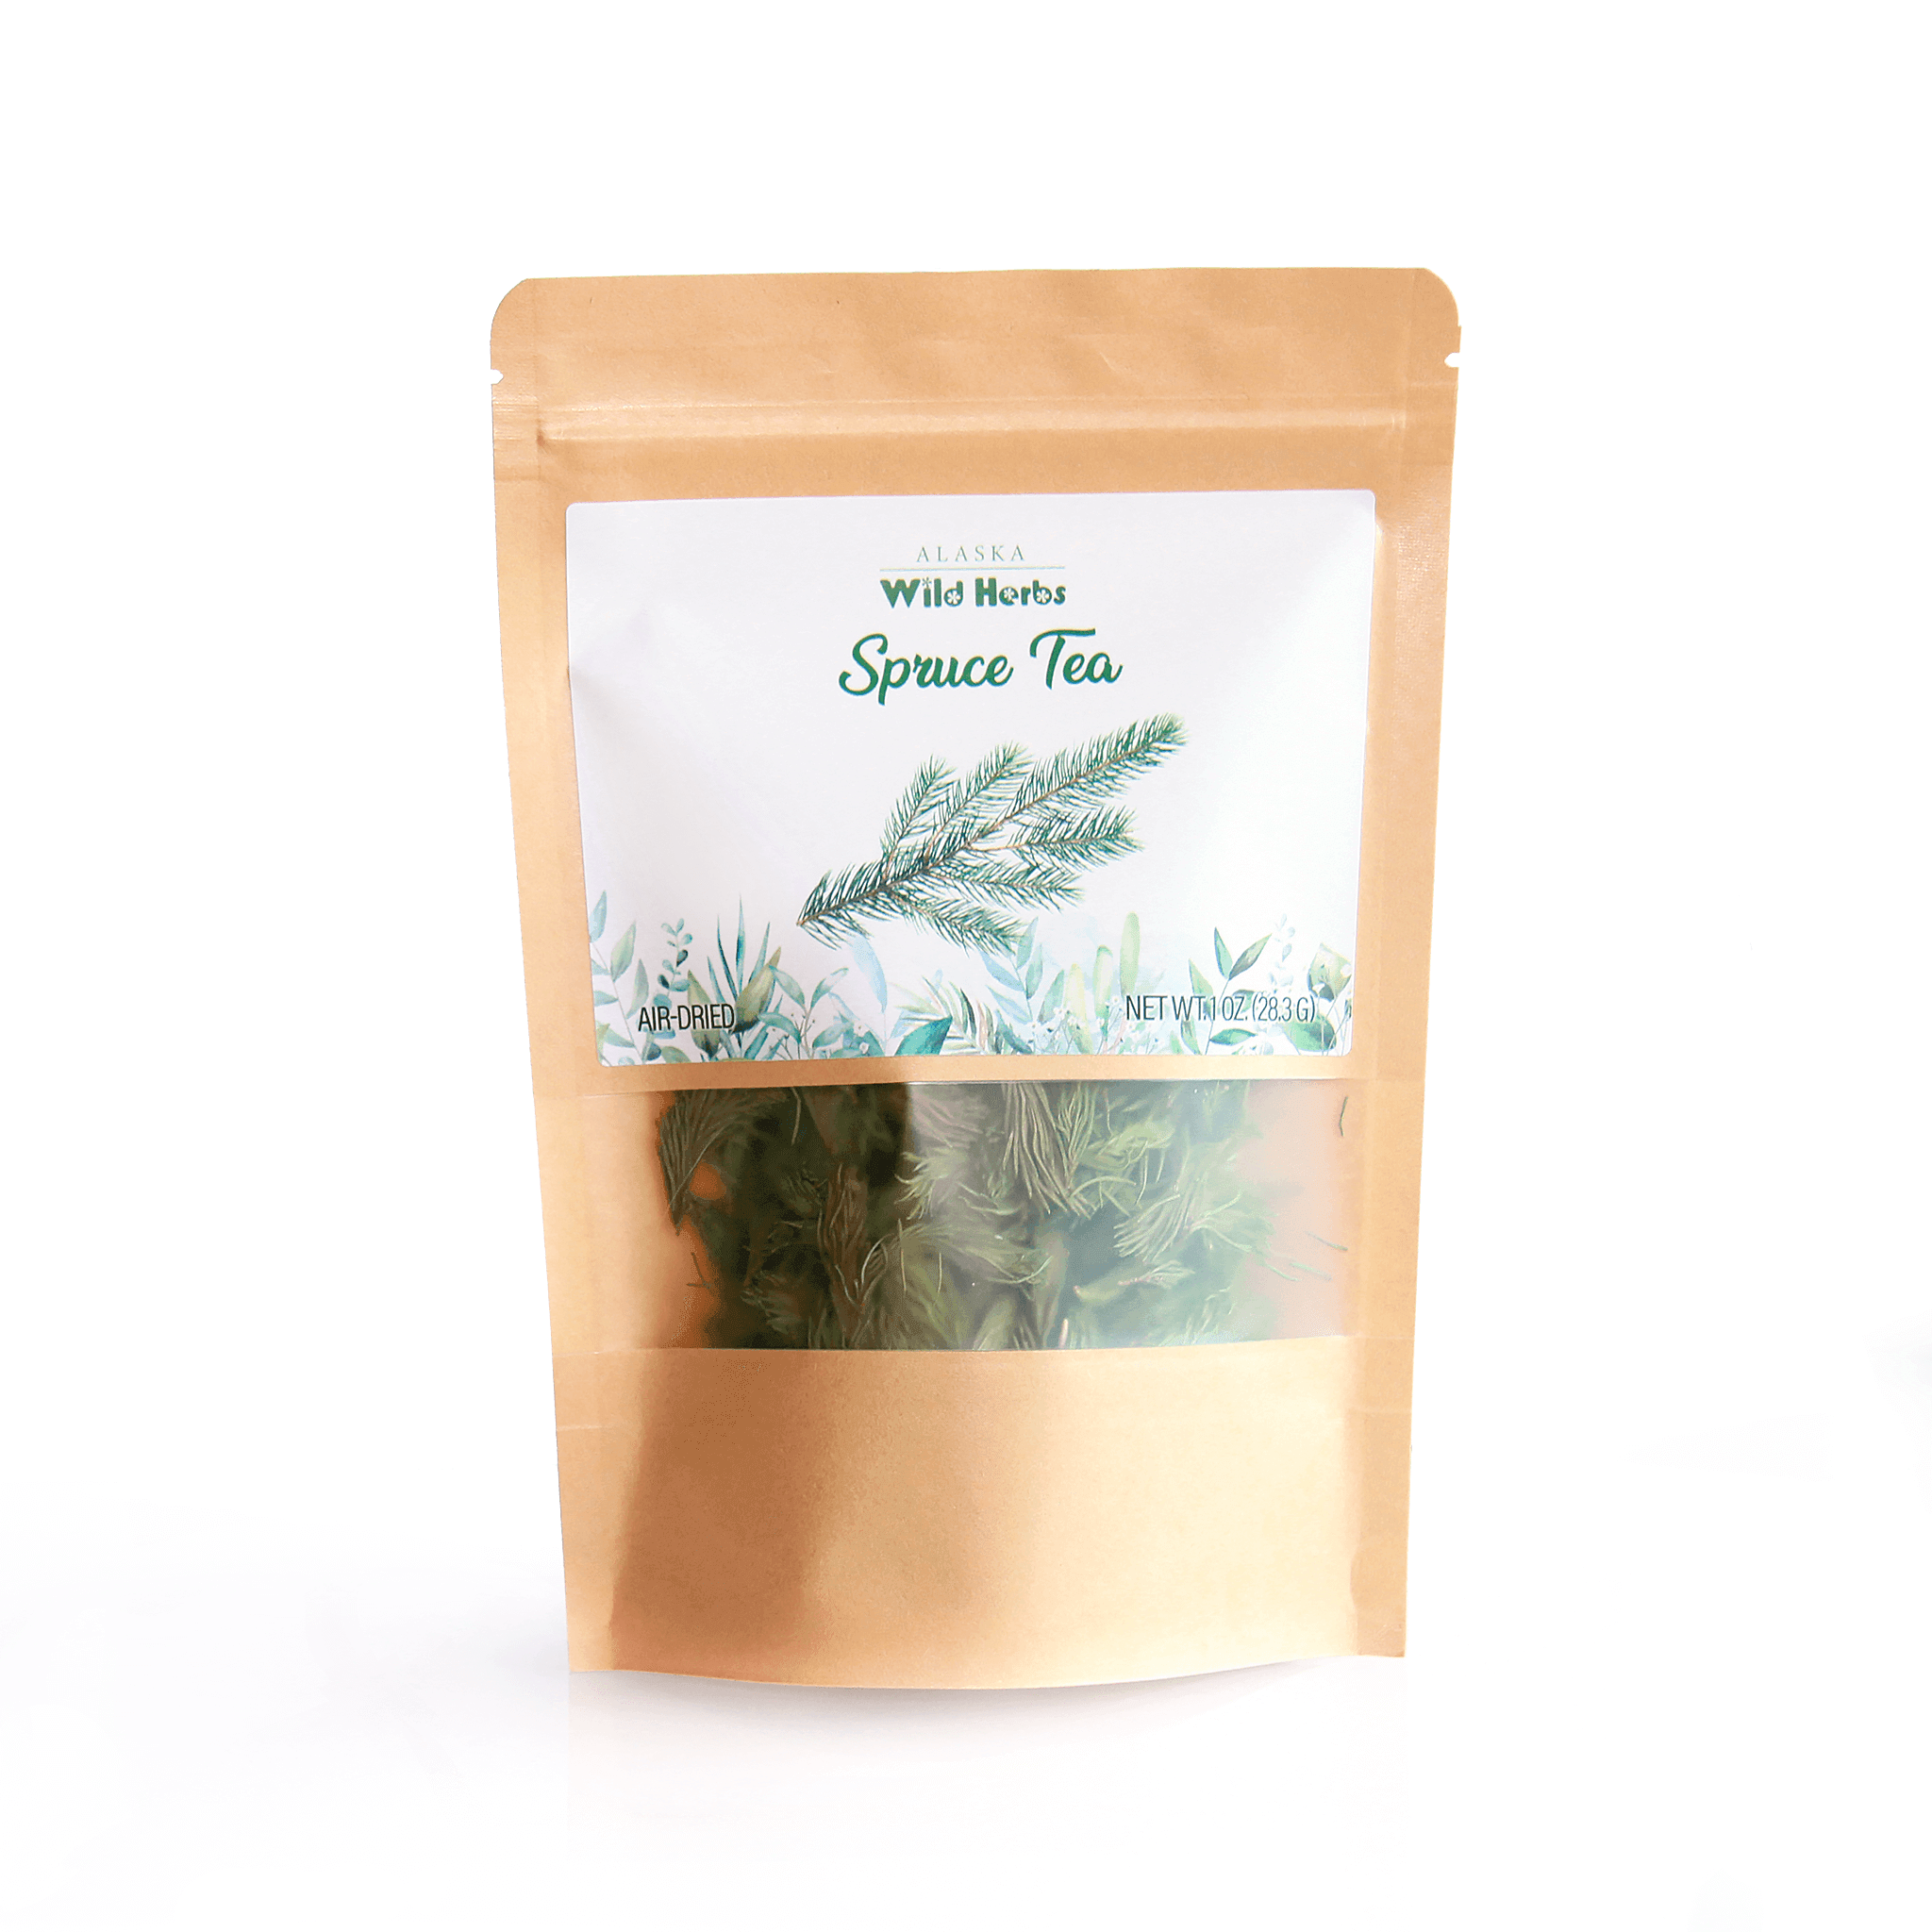 Wild Spruce Tea from Alaska